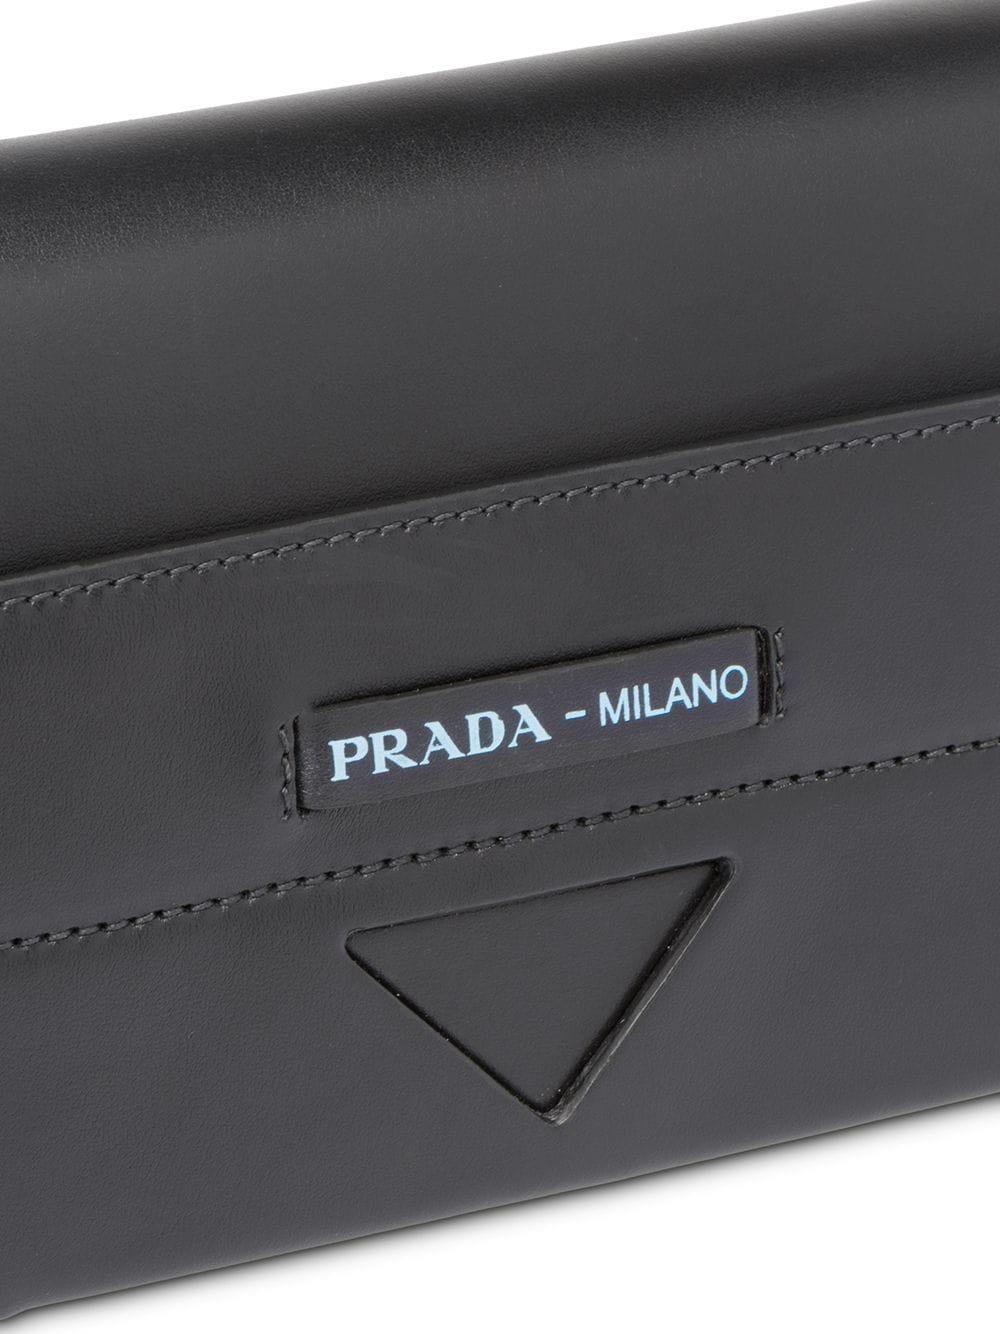 Prada Leather Manuelle Shoulder Bag in Black | Lyst